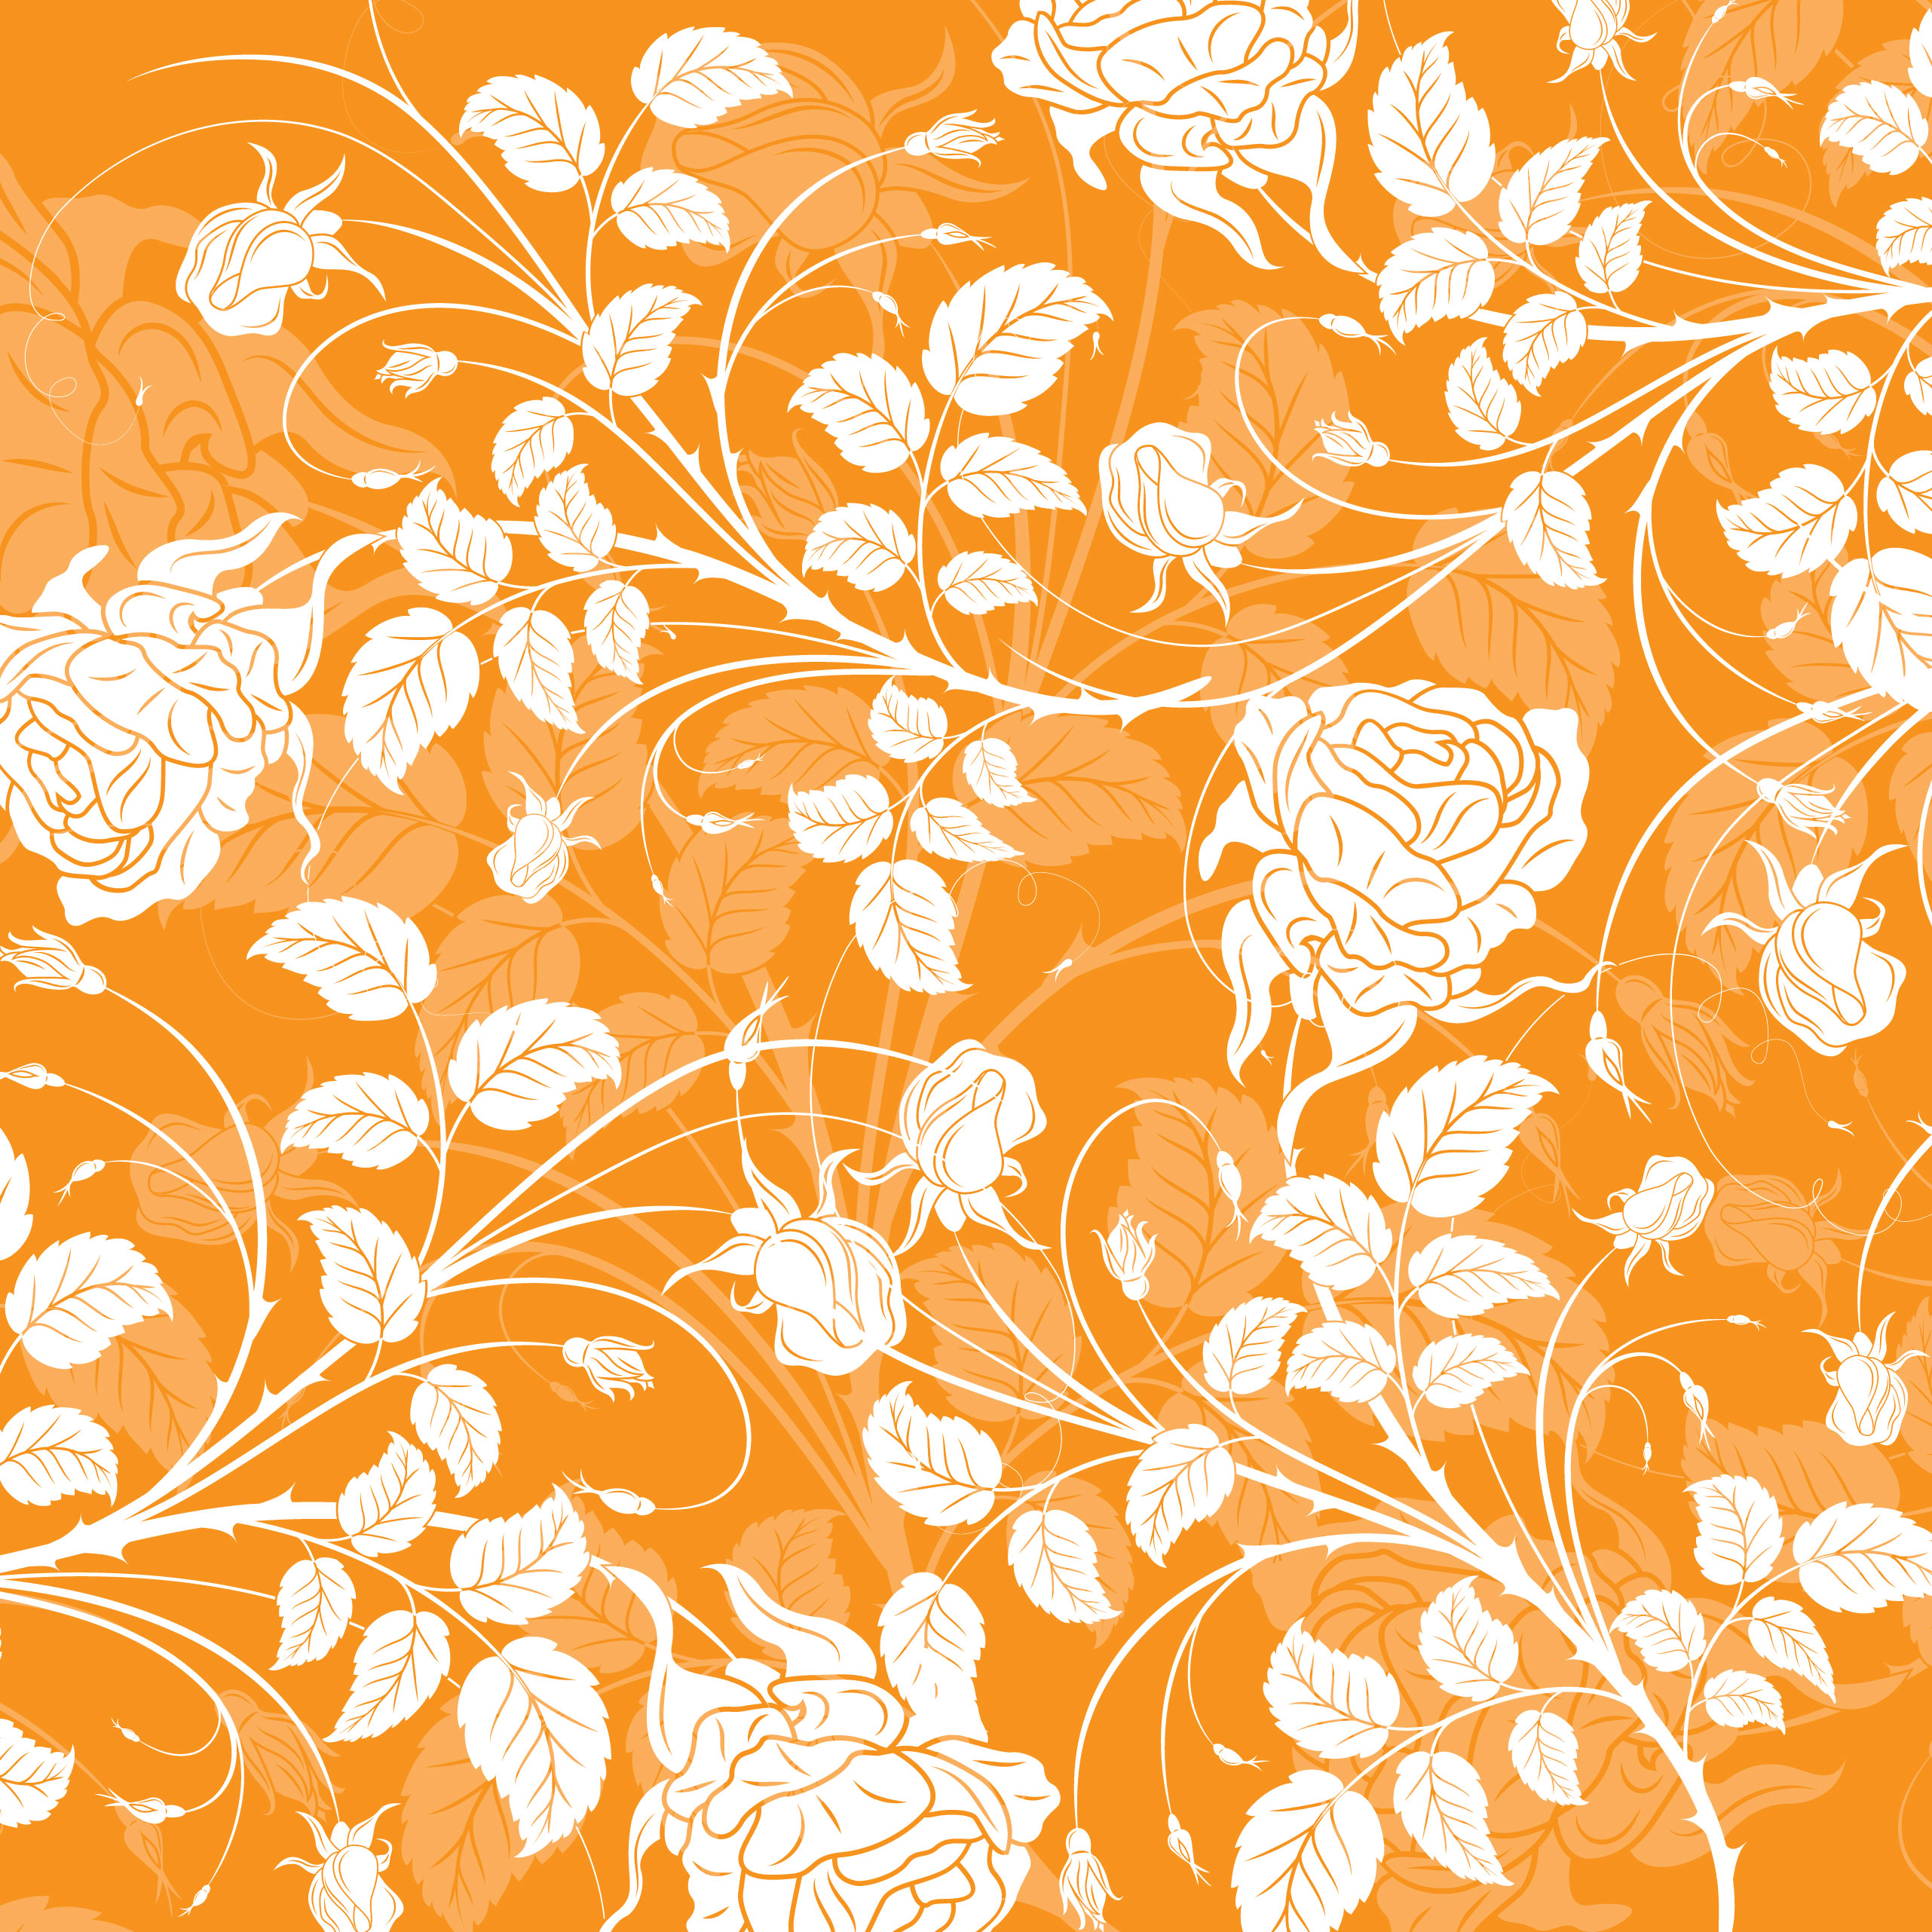 オレンジ色の花のイラスト フリー素材 壁紙 背景no 217 オレンジ 橙 茎葉